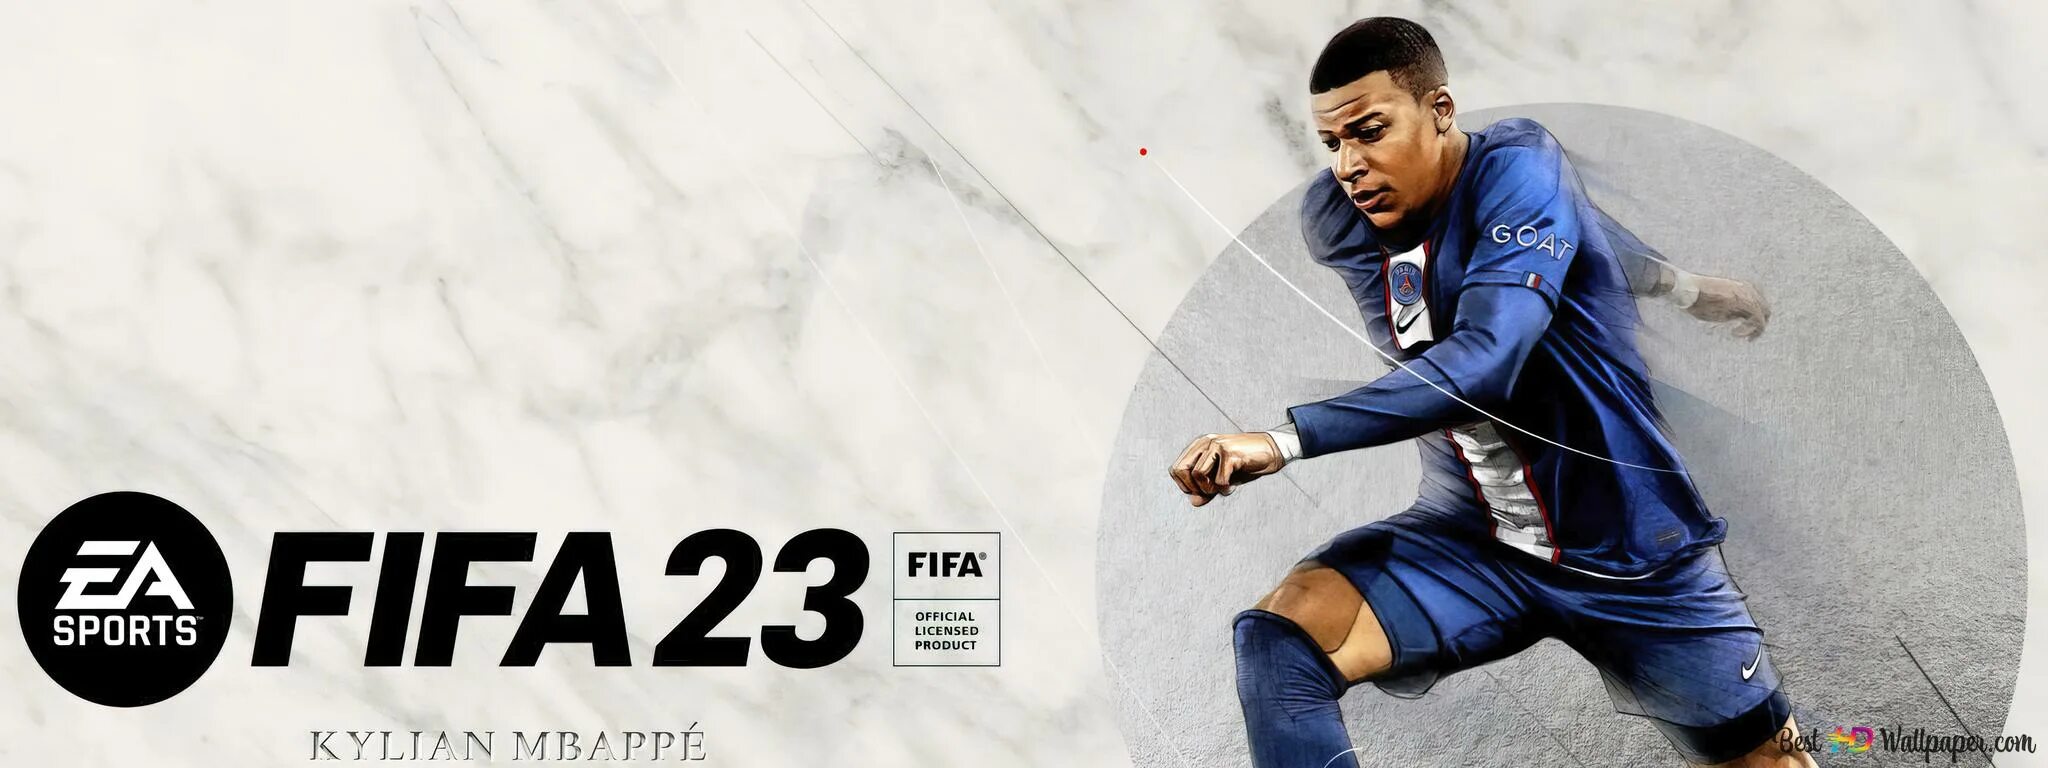 Fifa 23 download. Мбаппе ФИФА 23. ФИФА 23 обложка Мбаппе. Обои ФИФА 23. FIFA 23 Постер.